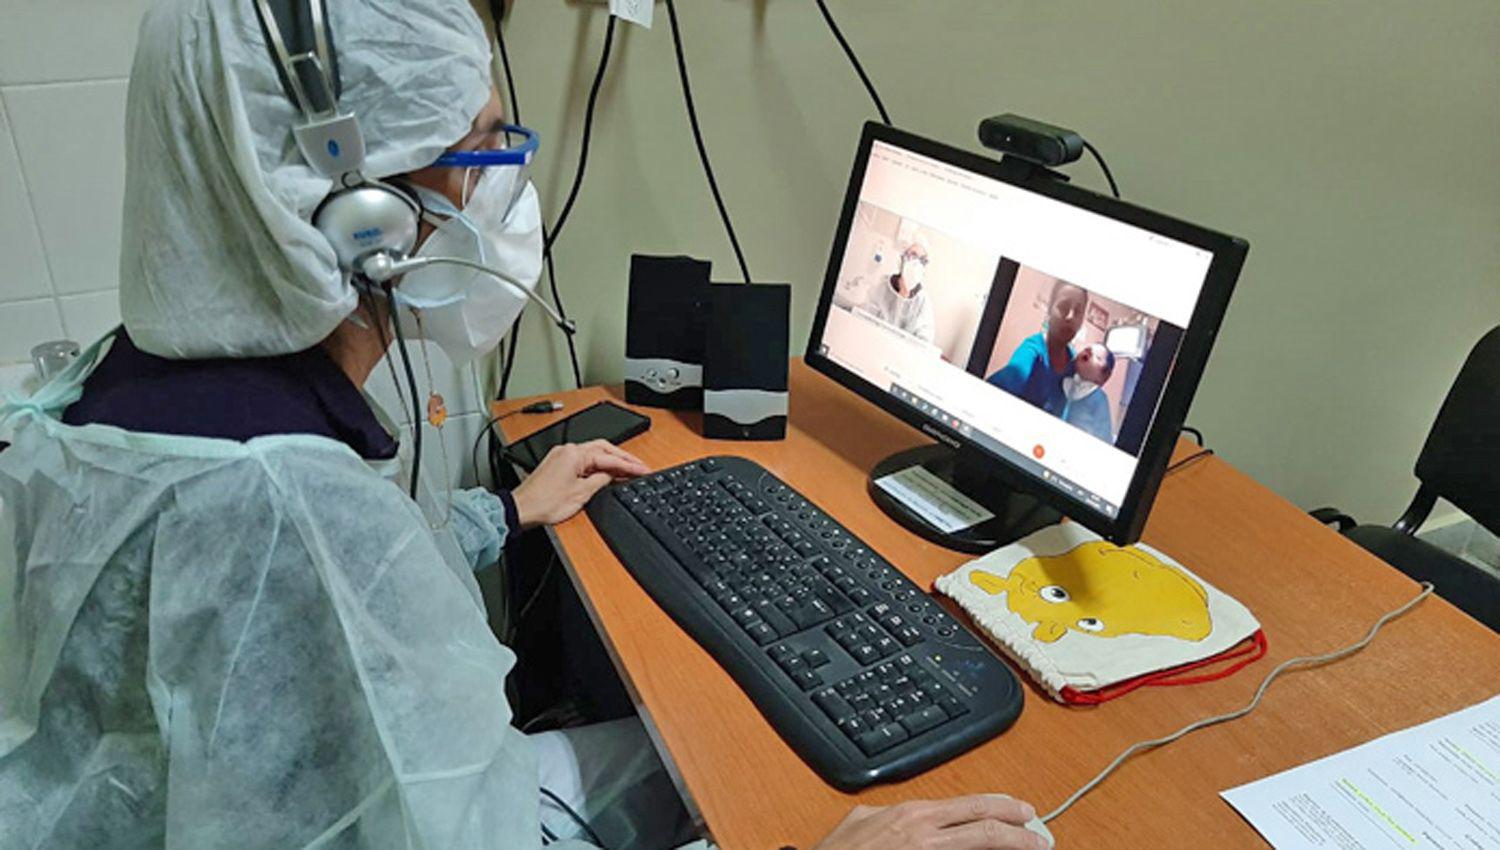 Meacutedicos del Cepsi asisten a pacientes del interior por teleconsulta